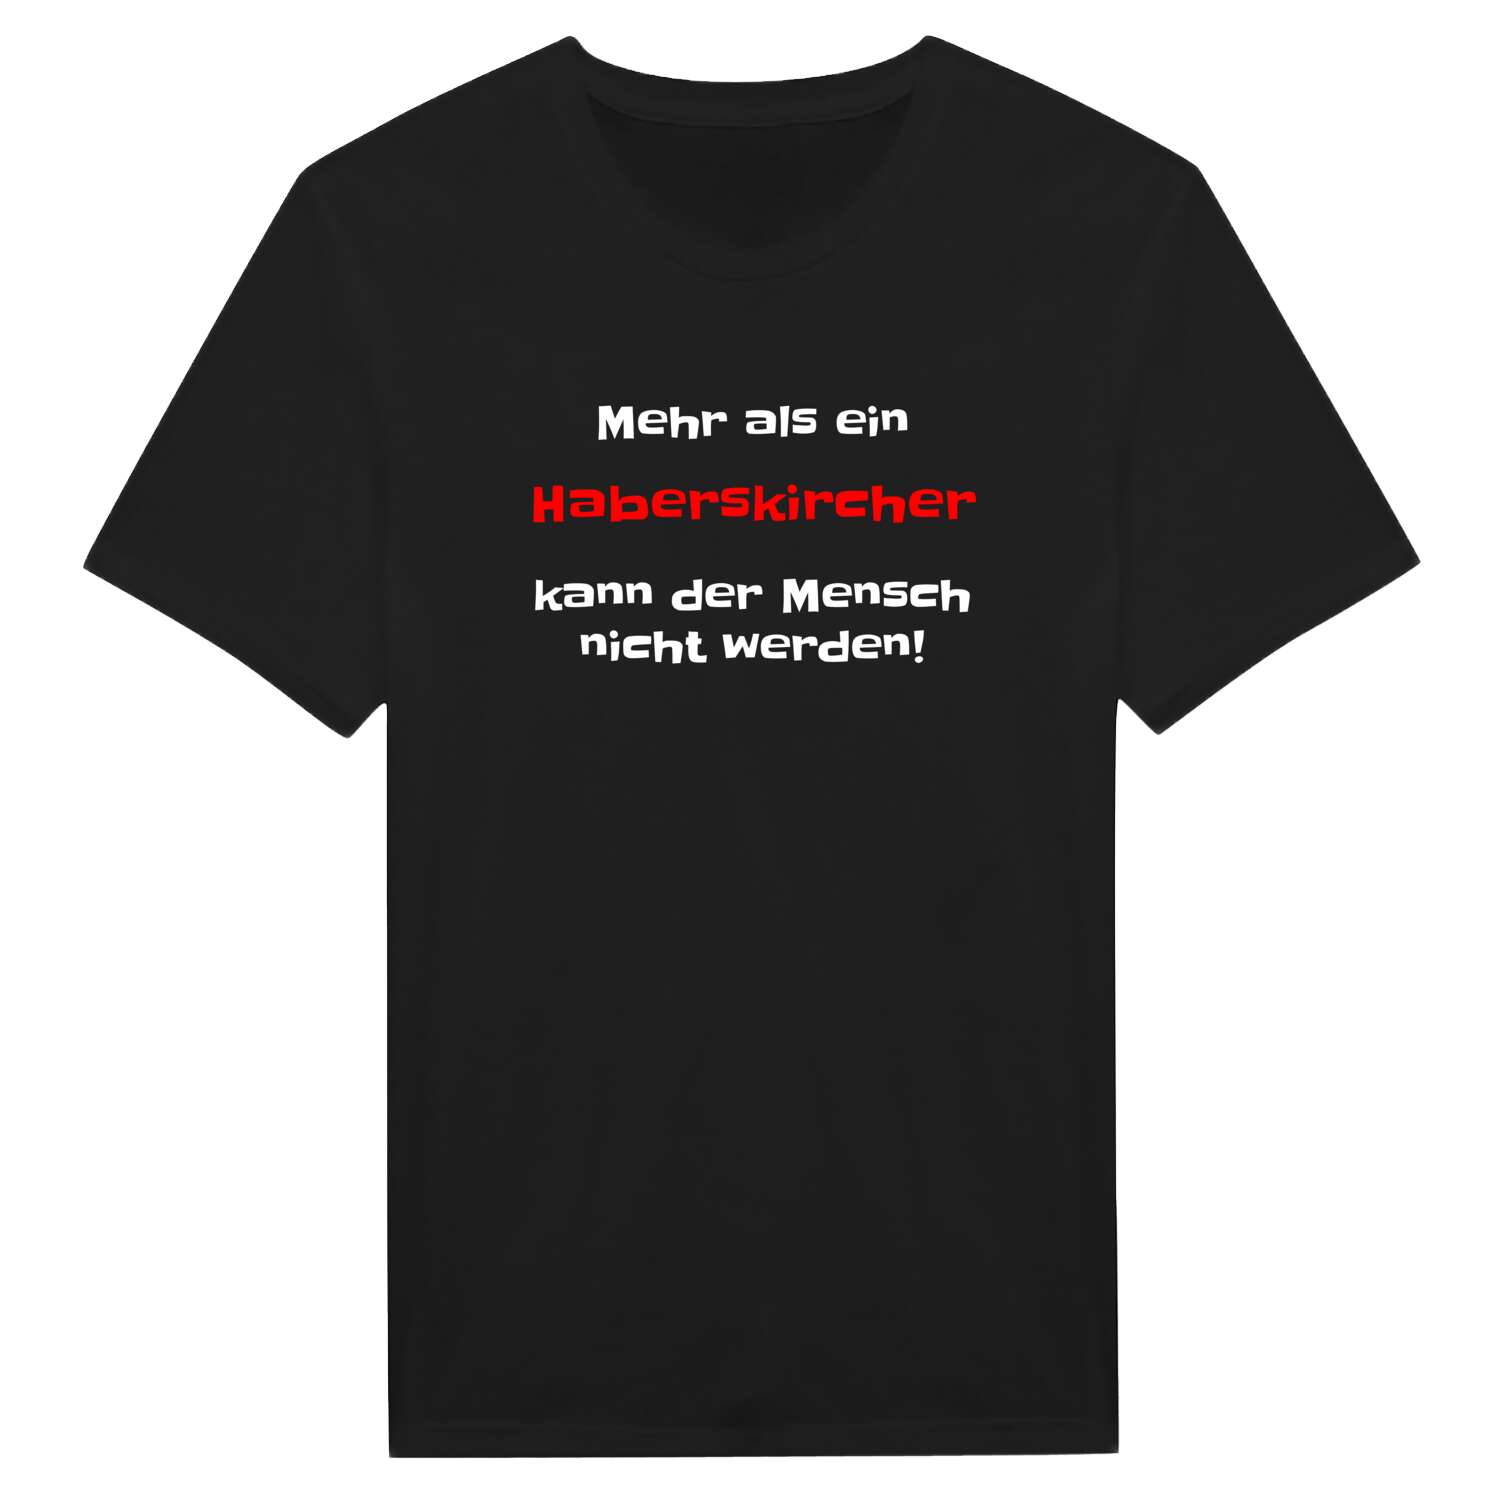 Haberskirch T-Shirt »Mehr als ein«